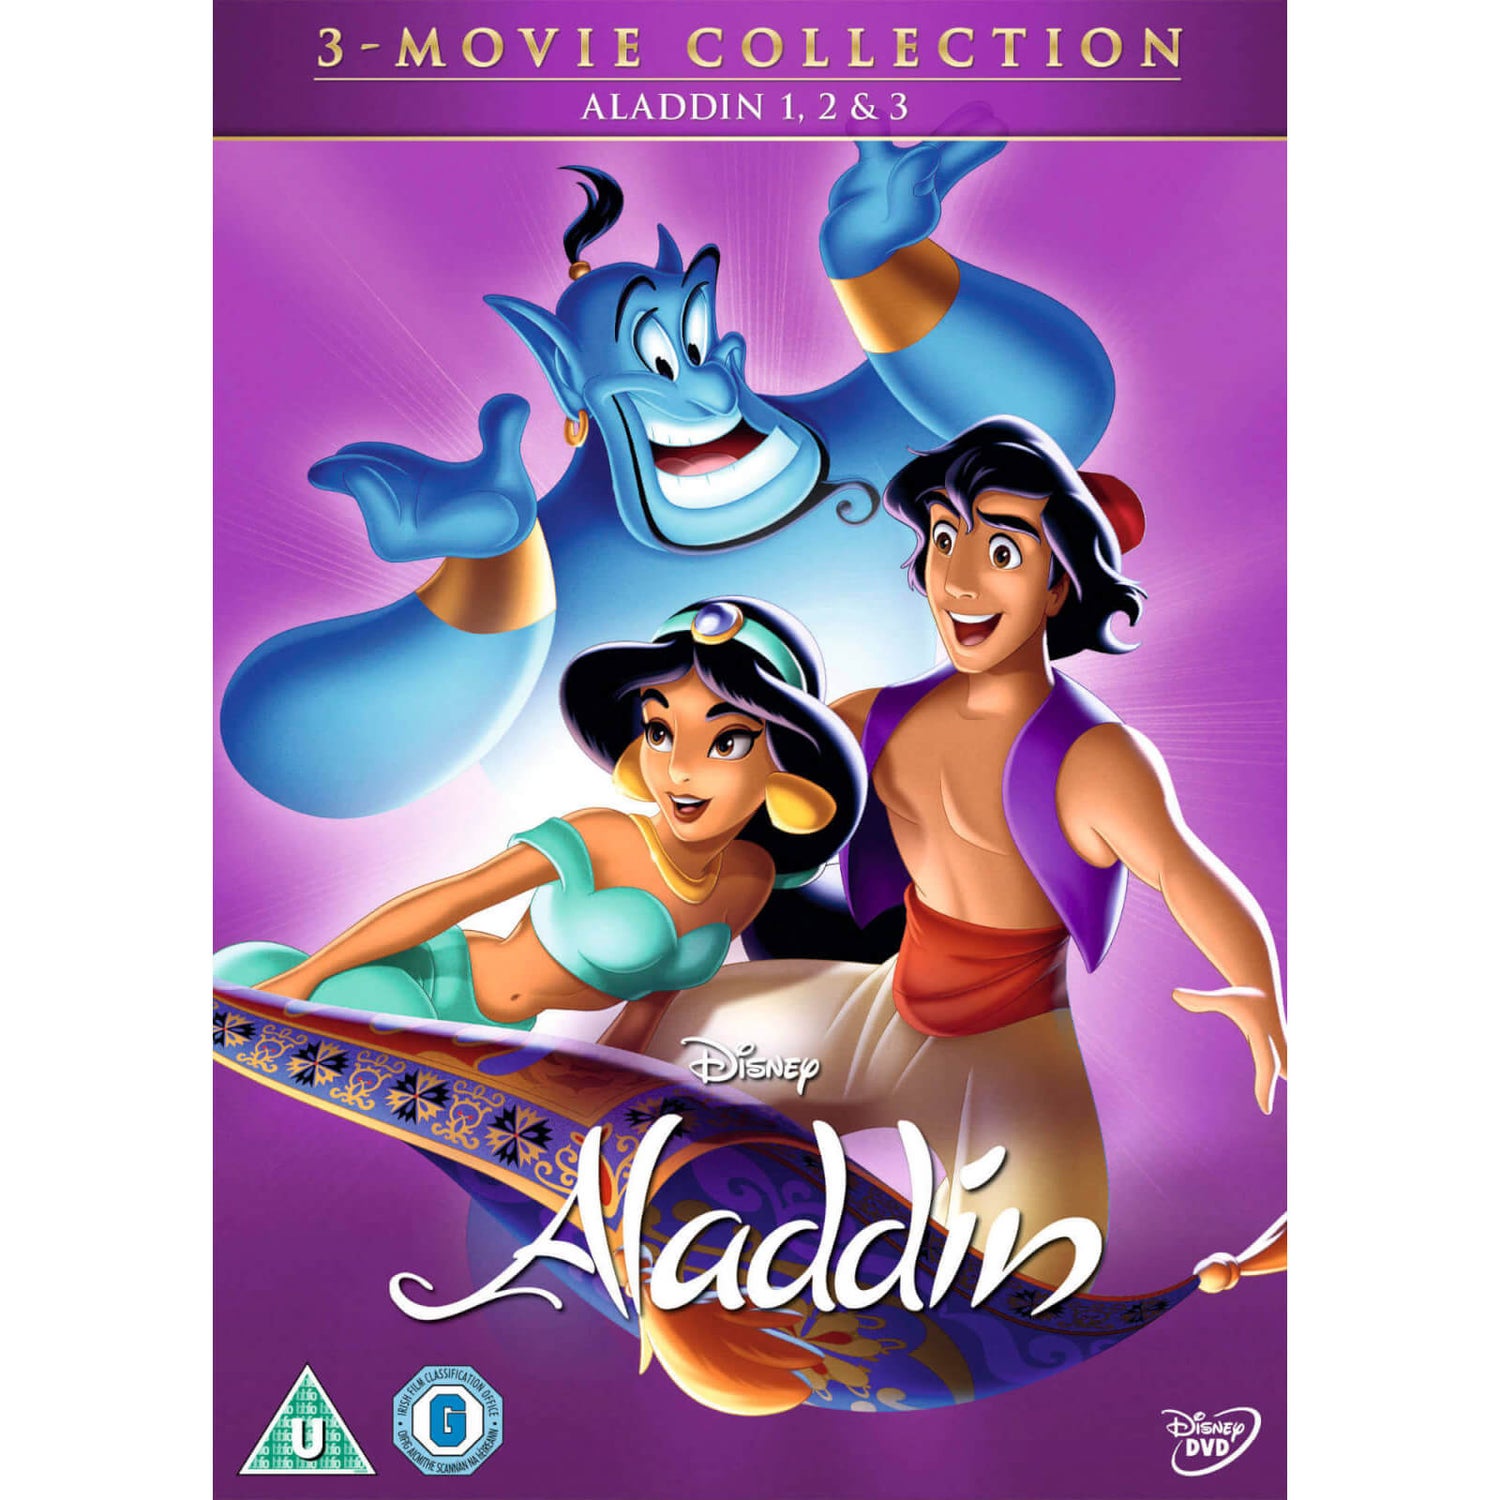 Aladdin - Trilogy DVD - Zavvi UK